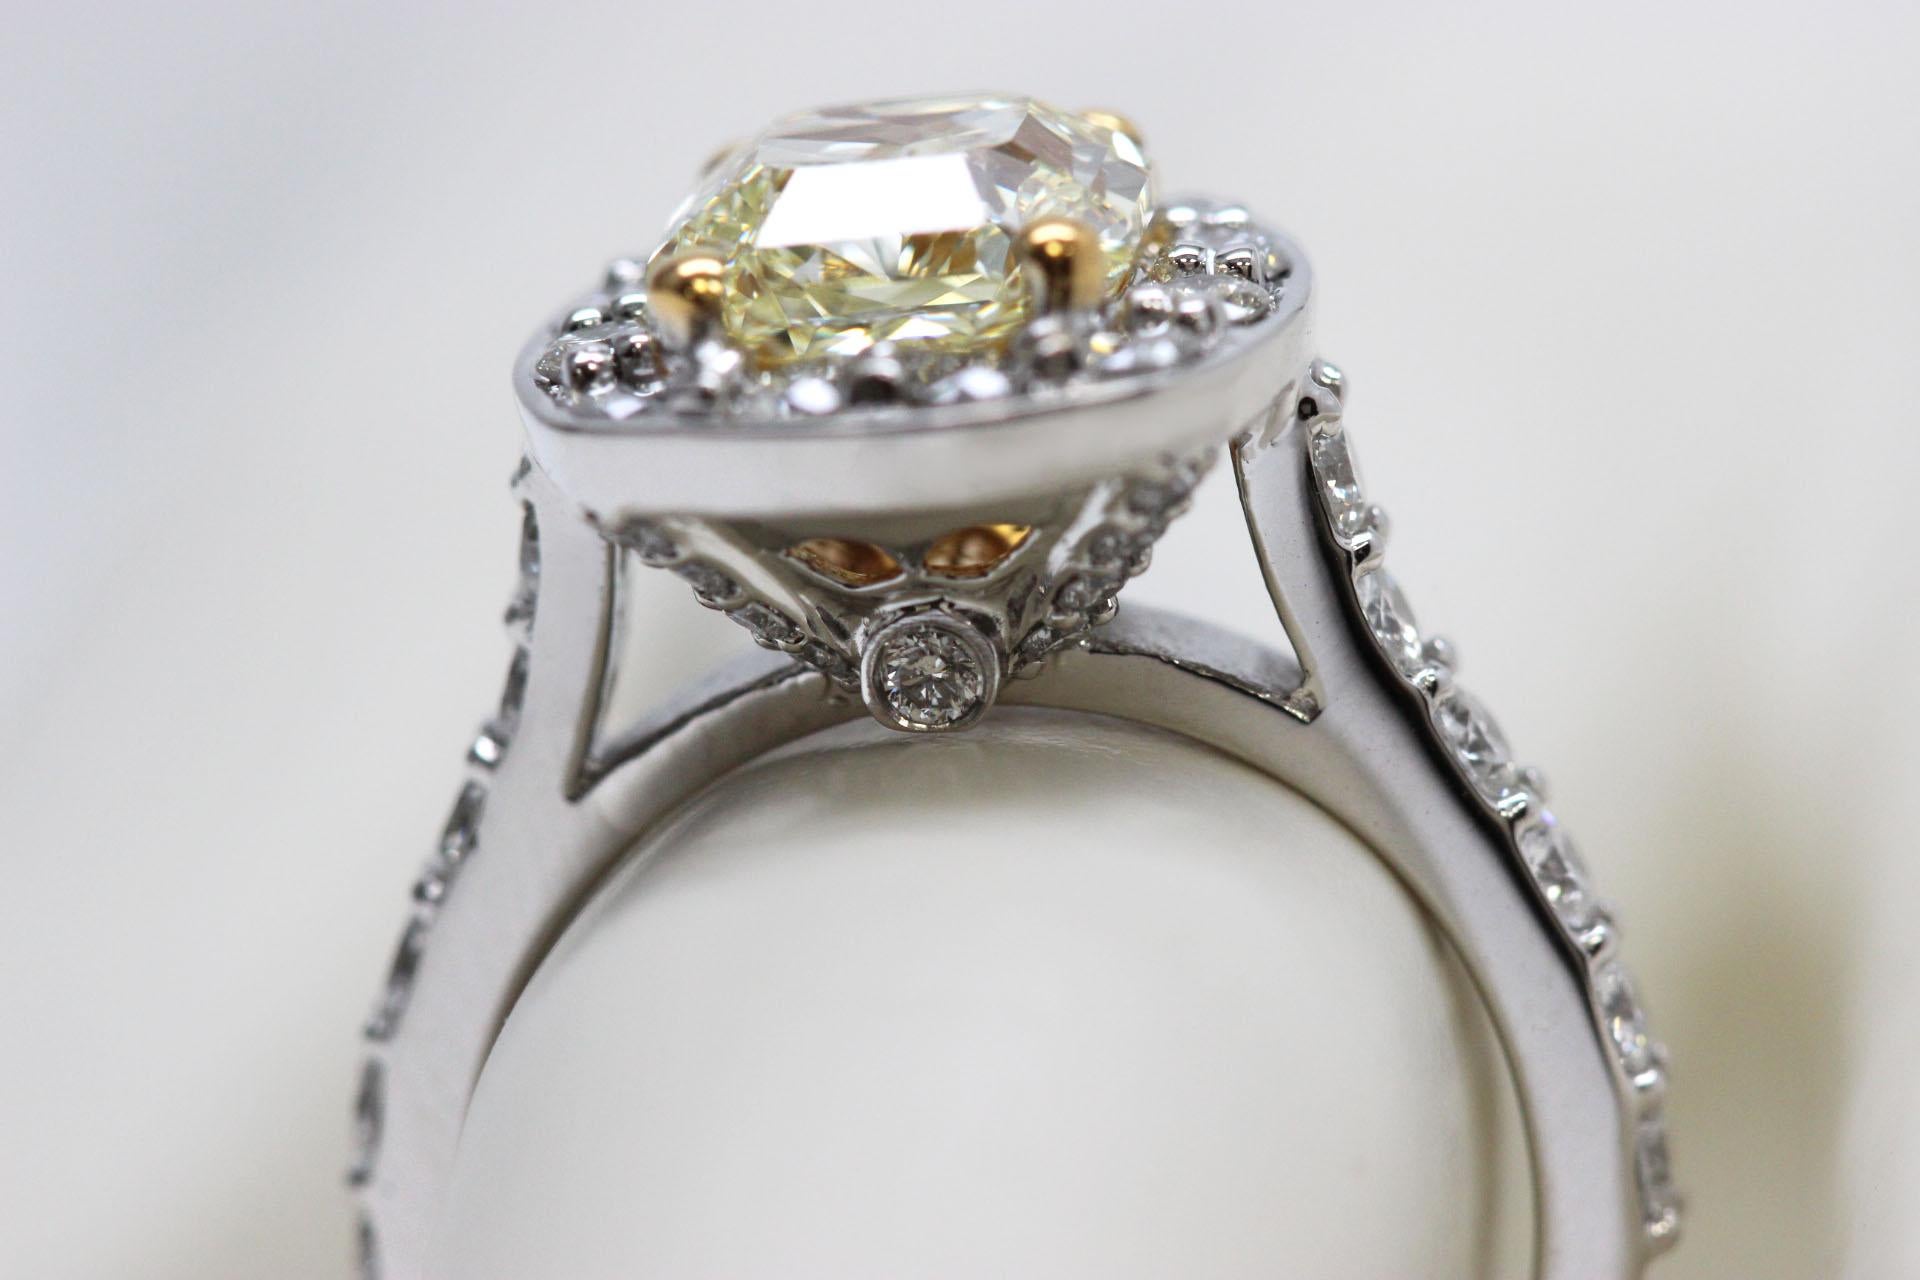 Ein 3-Karat-Diamant-Verlobungsring mit einem GIA-zertifizierten VVS1-fancy hellgelben Mittelstein. Halo-Verlobungsring mit strahlendem Schliff (3ct) aus einem hellgelben Naturdiamanten an einem Platinband.

Dieser Verlobungsring von Scarselli ist